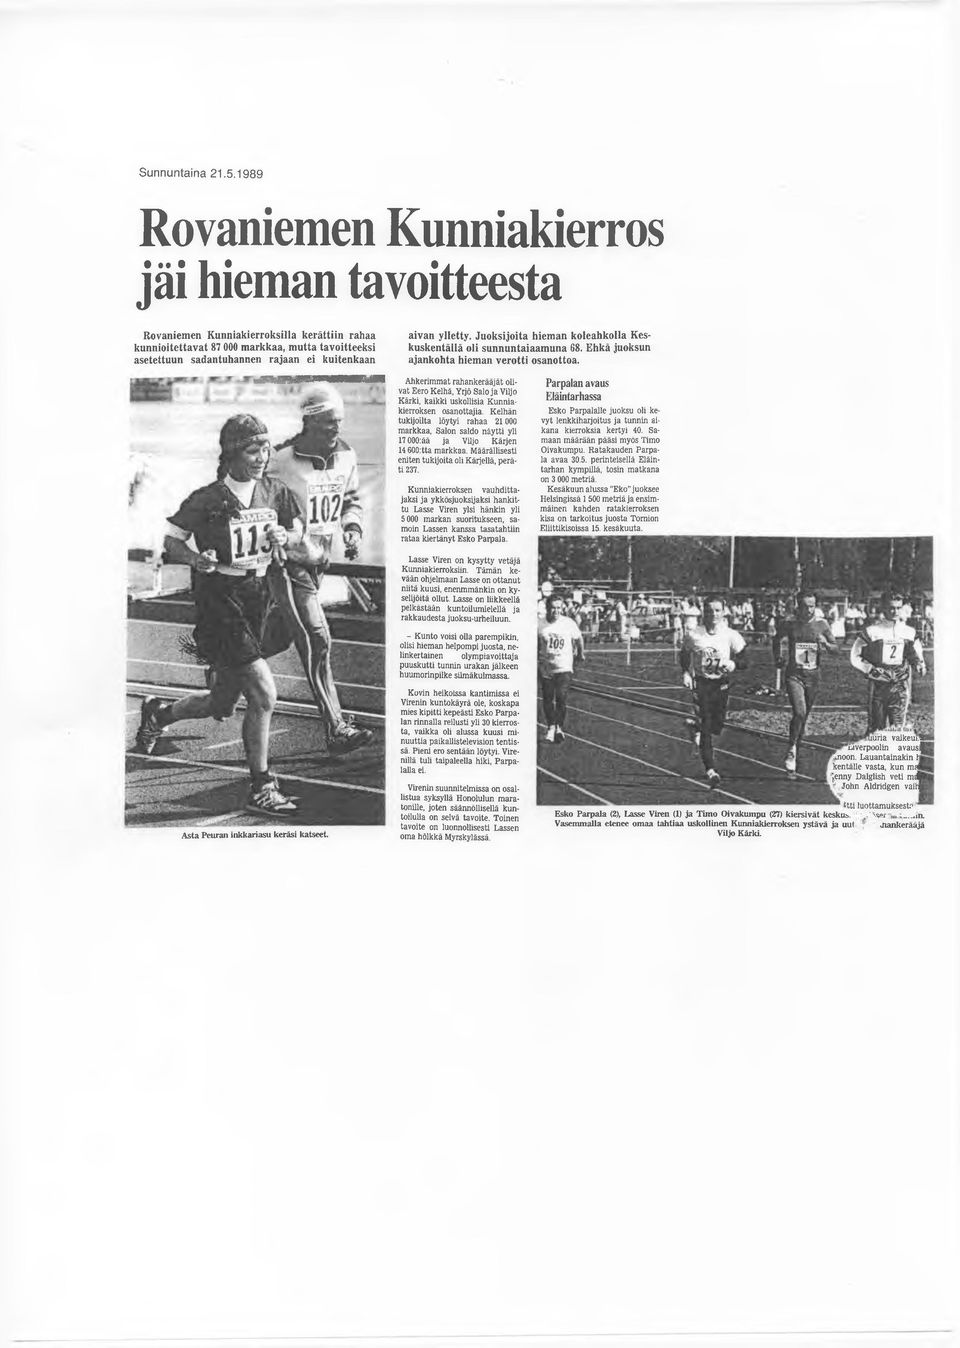 aivan ylletty. Juoksijoita hieman koleahkolla Keskuskentällä oli sunnuntaiaamuna 68. Ehkä juoksun ajankohta hieman verotti osanottoa.